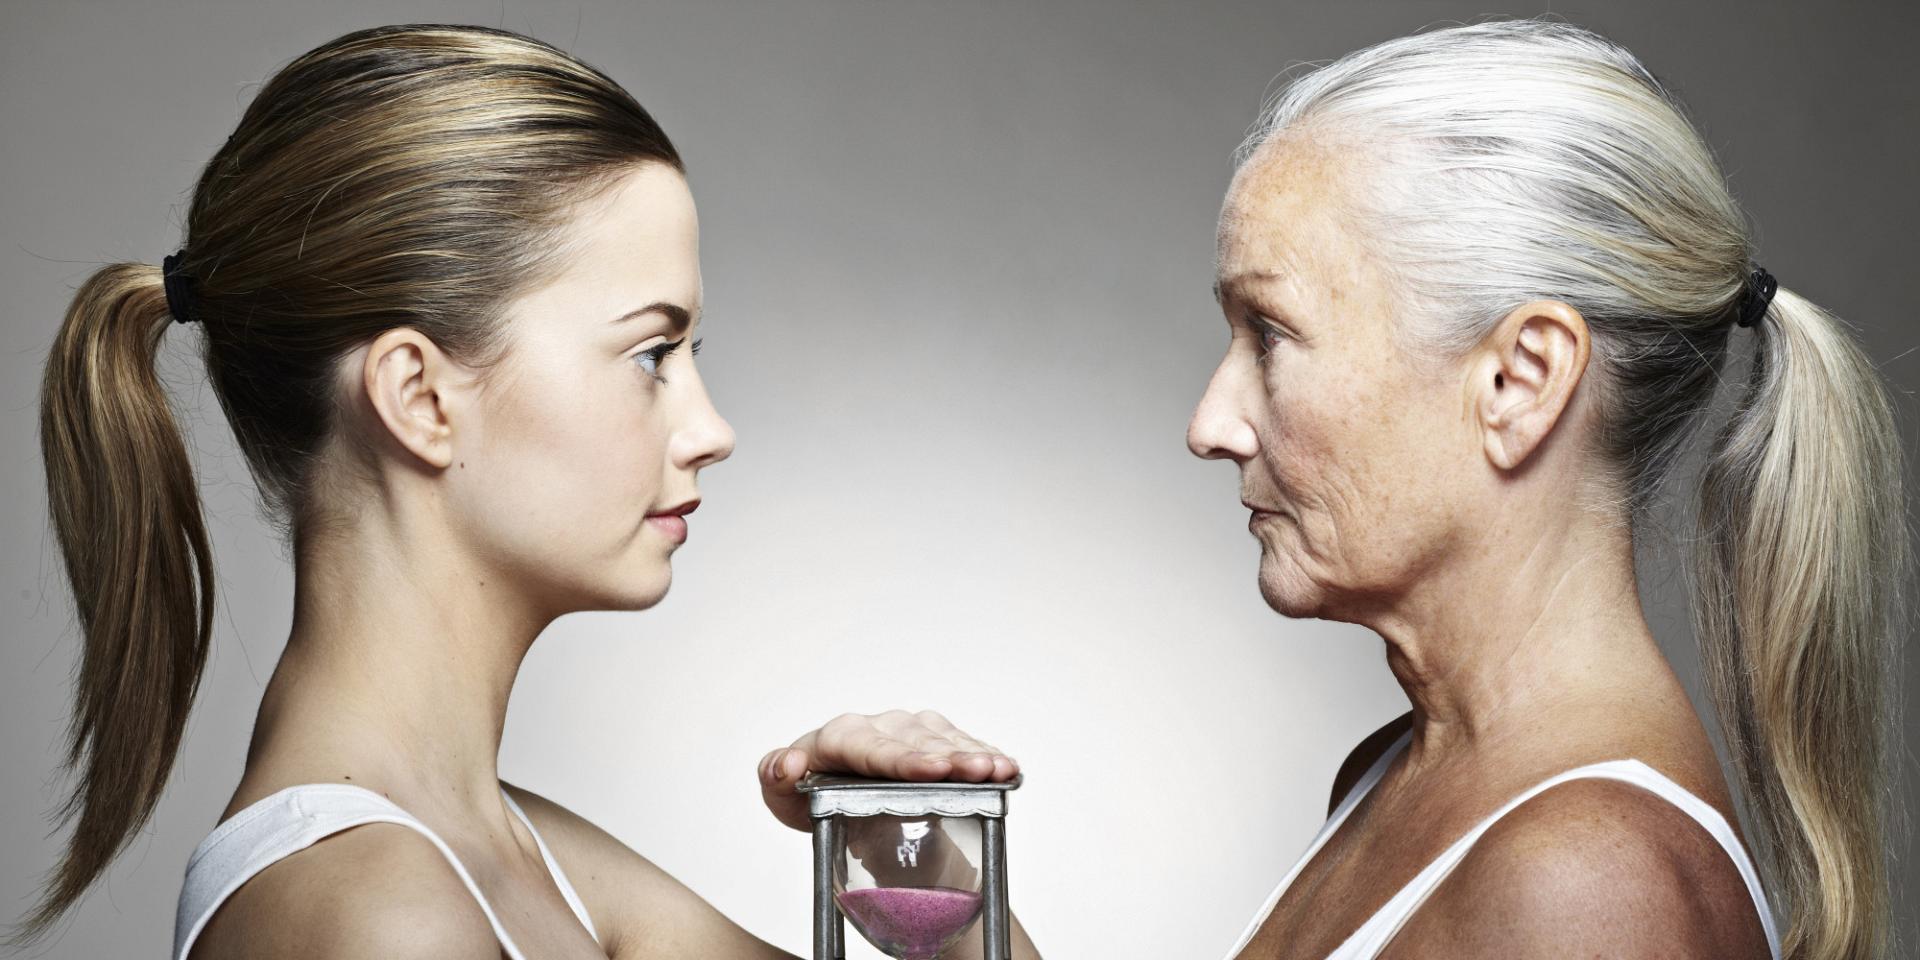 Μπορούμε να αντιστρέψουμε τη γήρανση; – Επαναστατική μελέτη